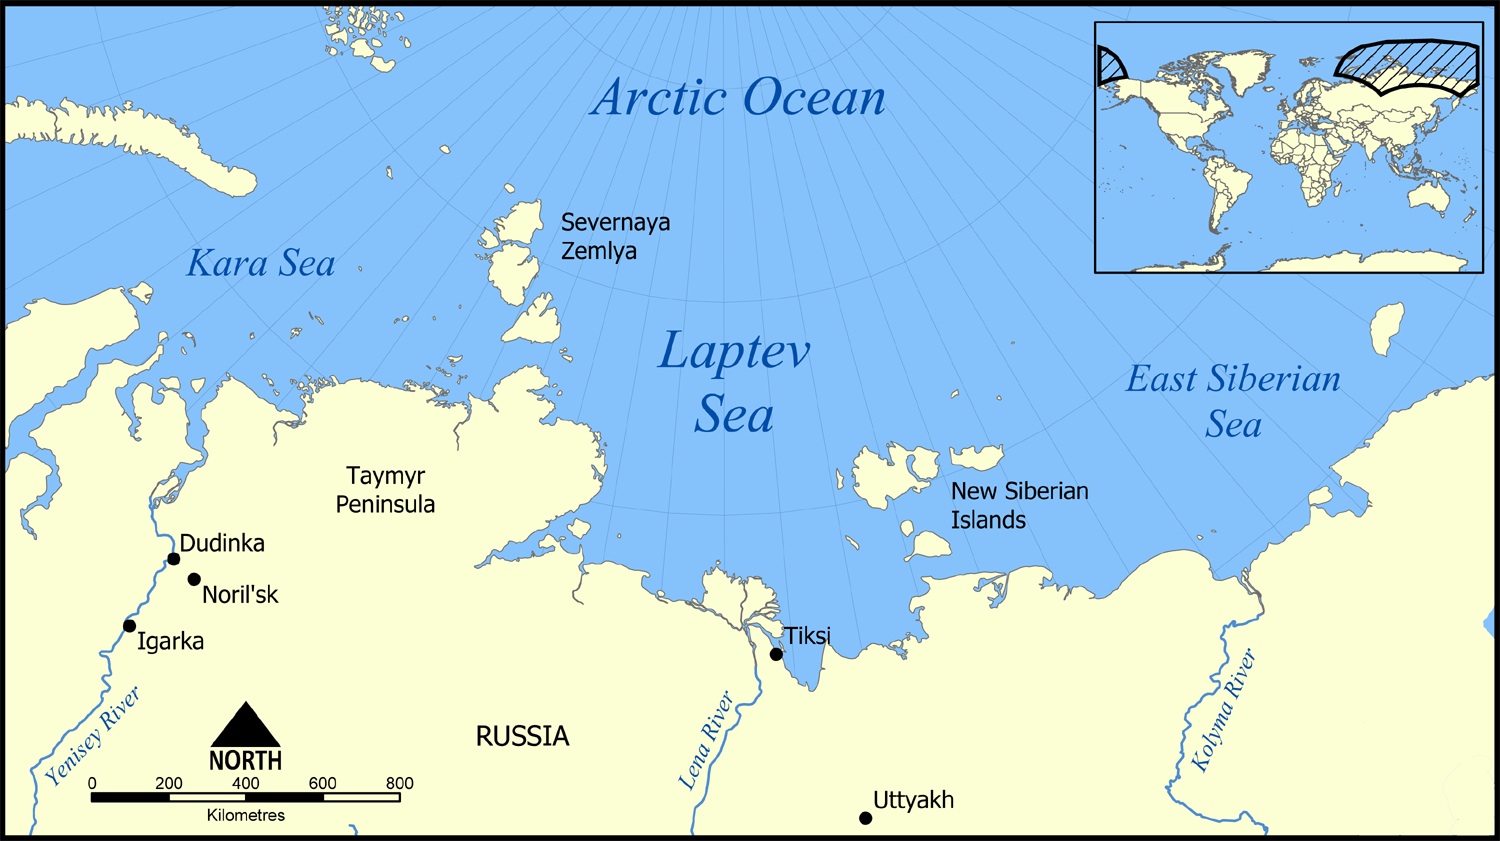 L’Oceano Artico area strategica per la Federazione Russa